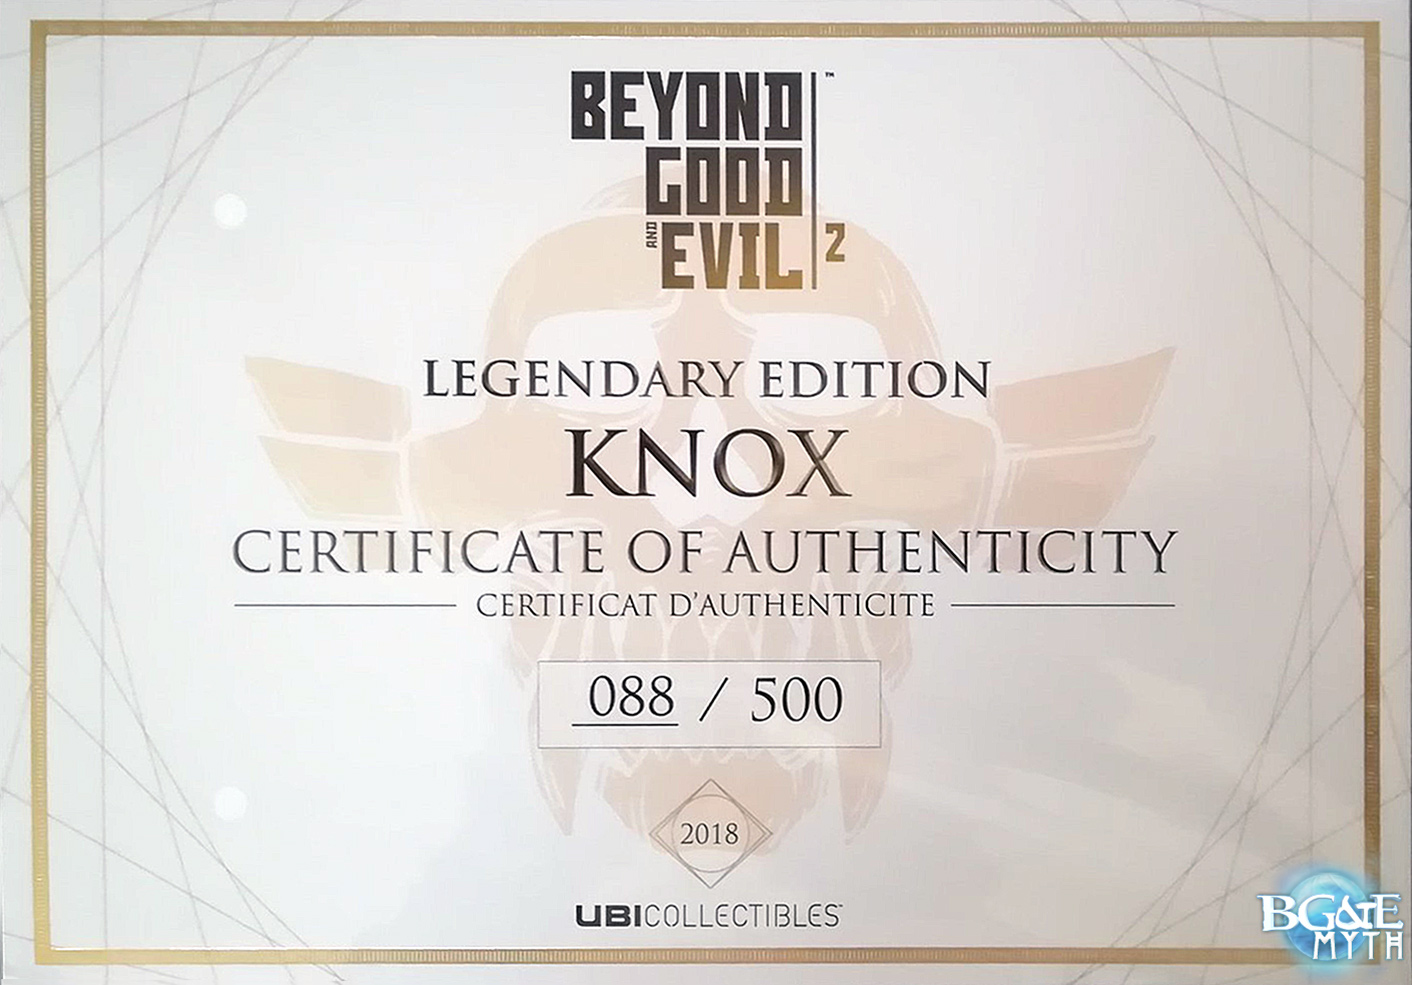 Certificat d'authenticité Legendary Edition Knox